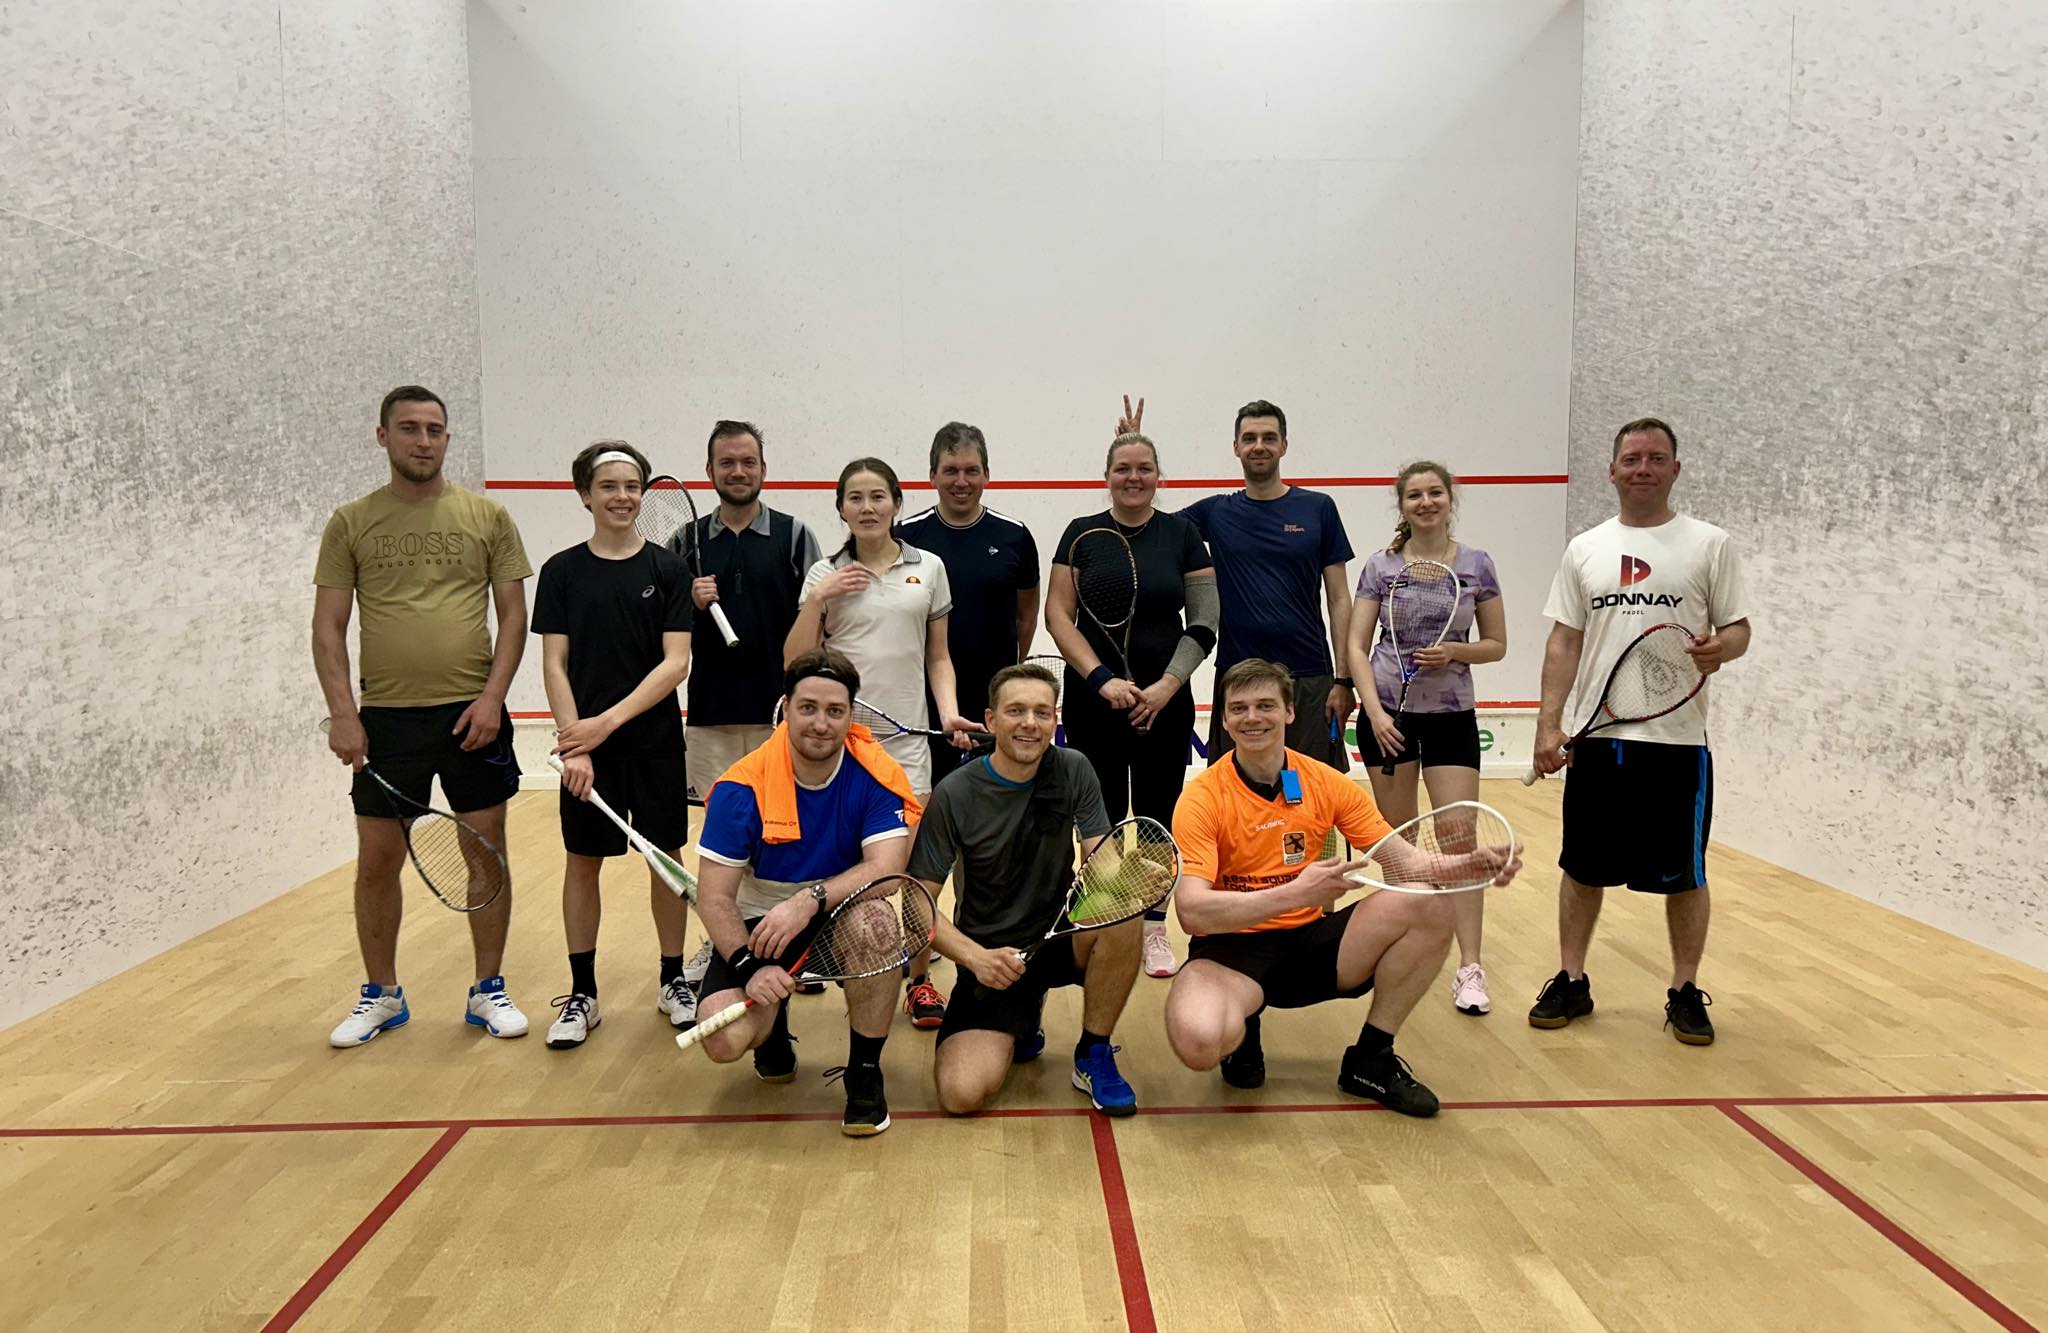 Squashifännid teavad, et nii Tallinnas kui ka Tartus toimuvad iganädalaselt squashi klubiõhtud, kus nii kogenenud mängijad kui ka täiesti esimest korda proovija